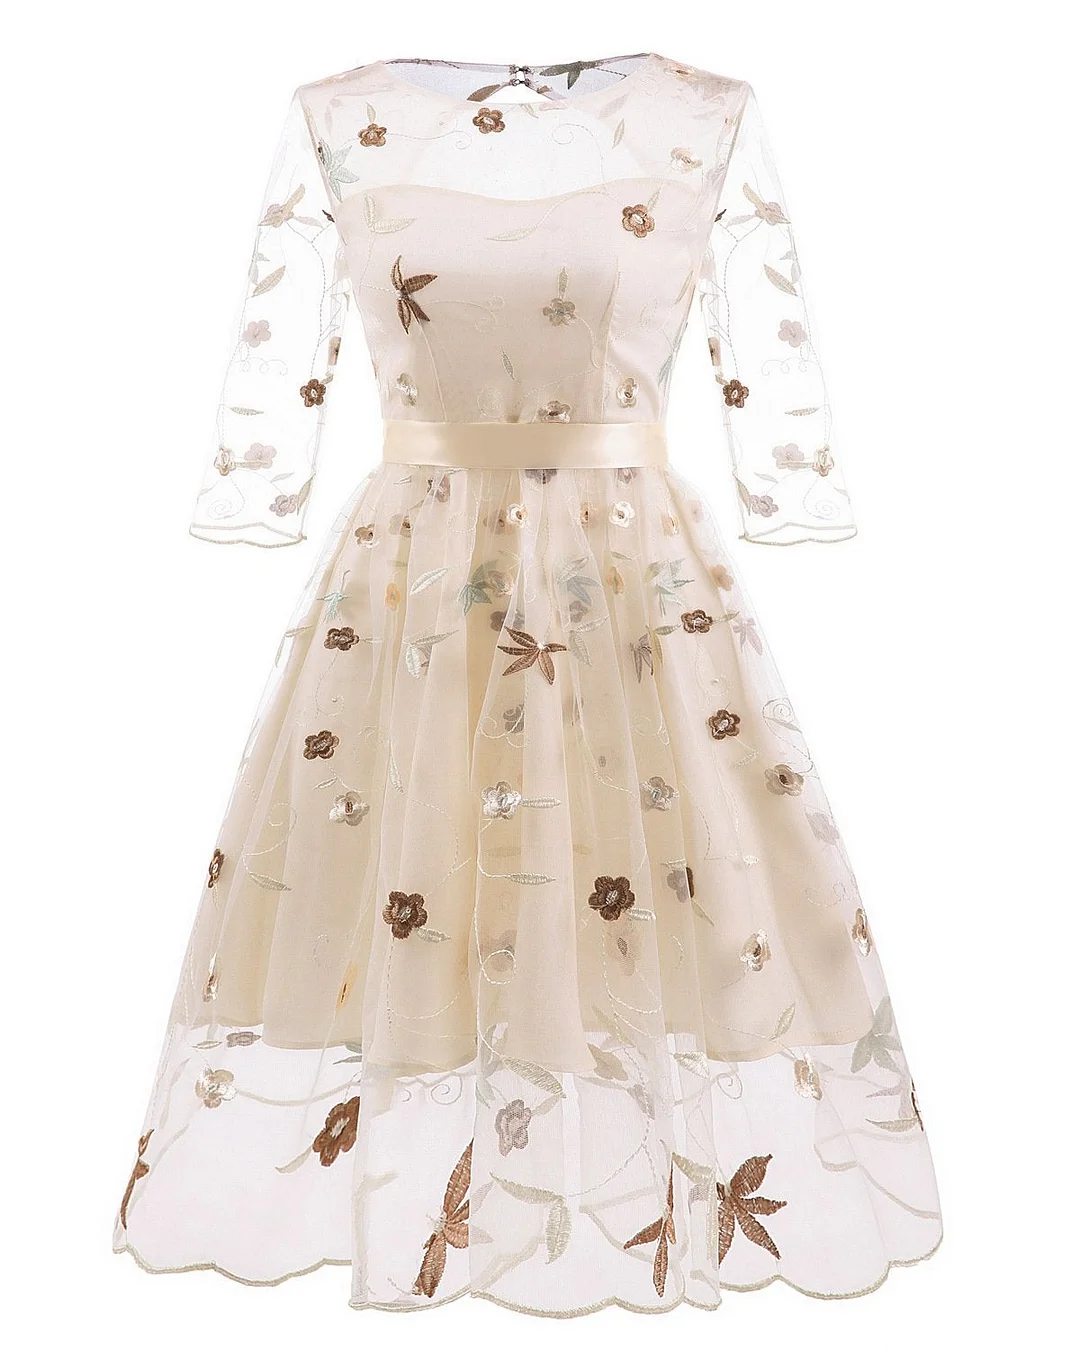 Women's Tea Dress Flower Embroidered 1950s Rockabilly Lace Swing Dress